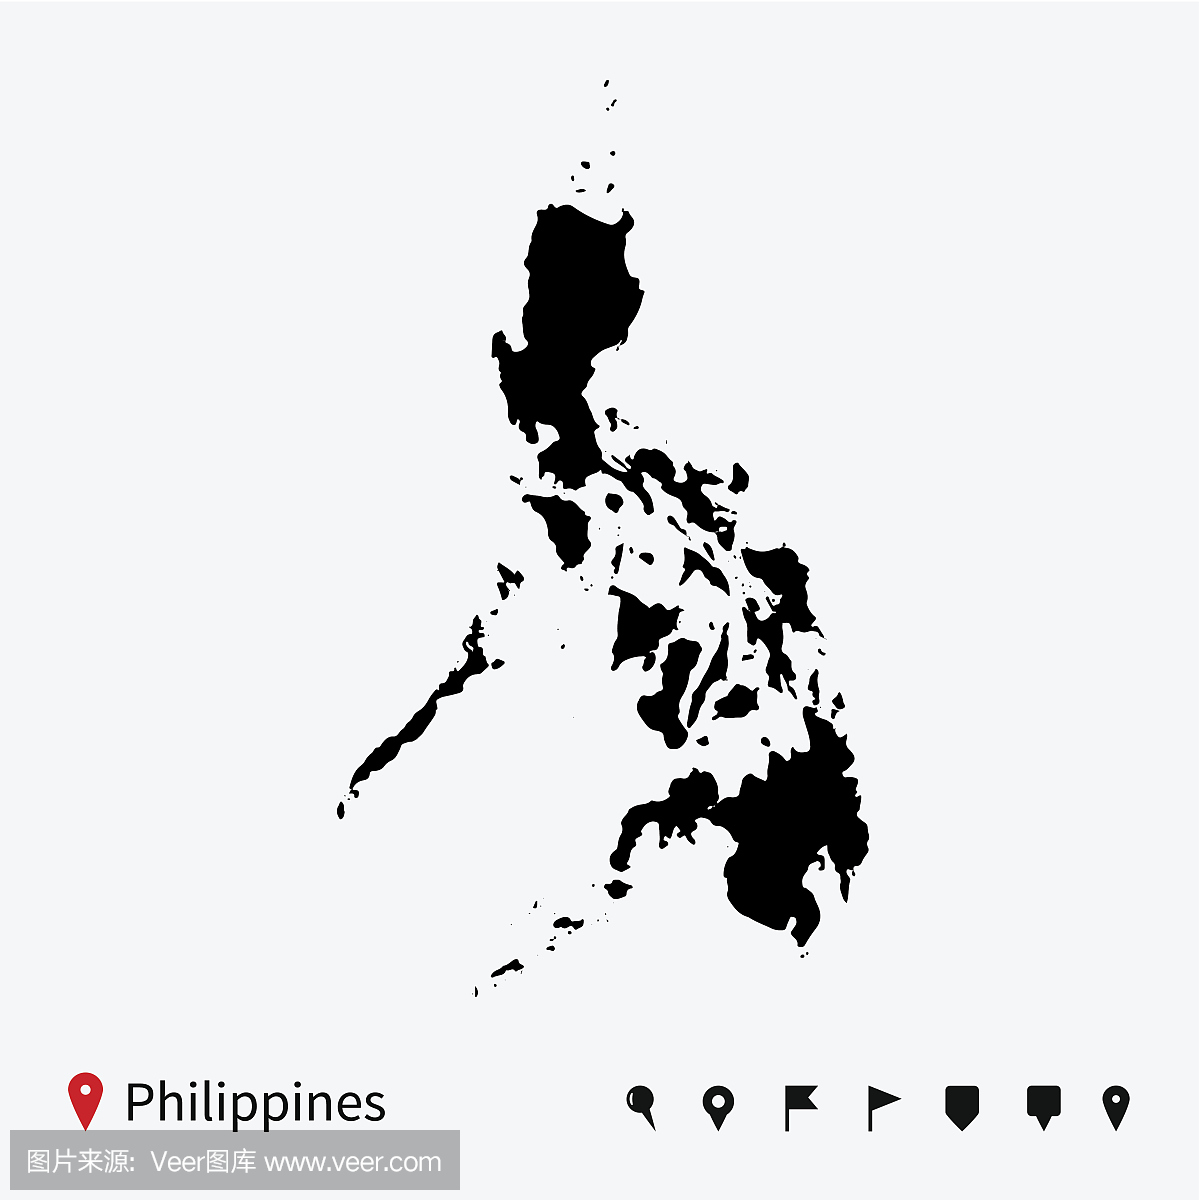 菲律宾的高详细矢量地图导航引脚。